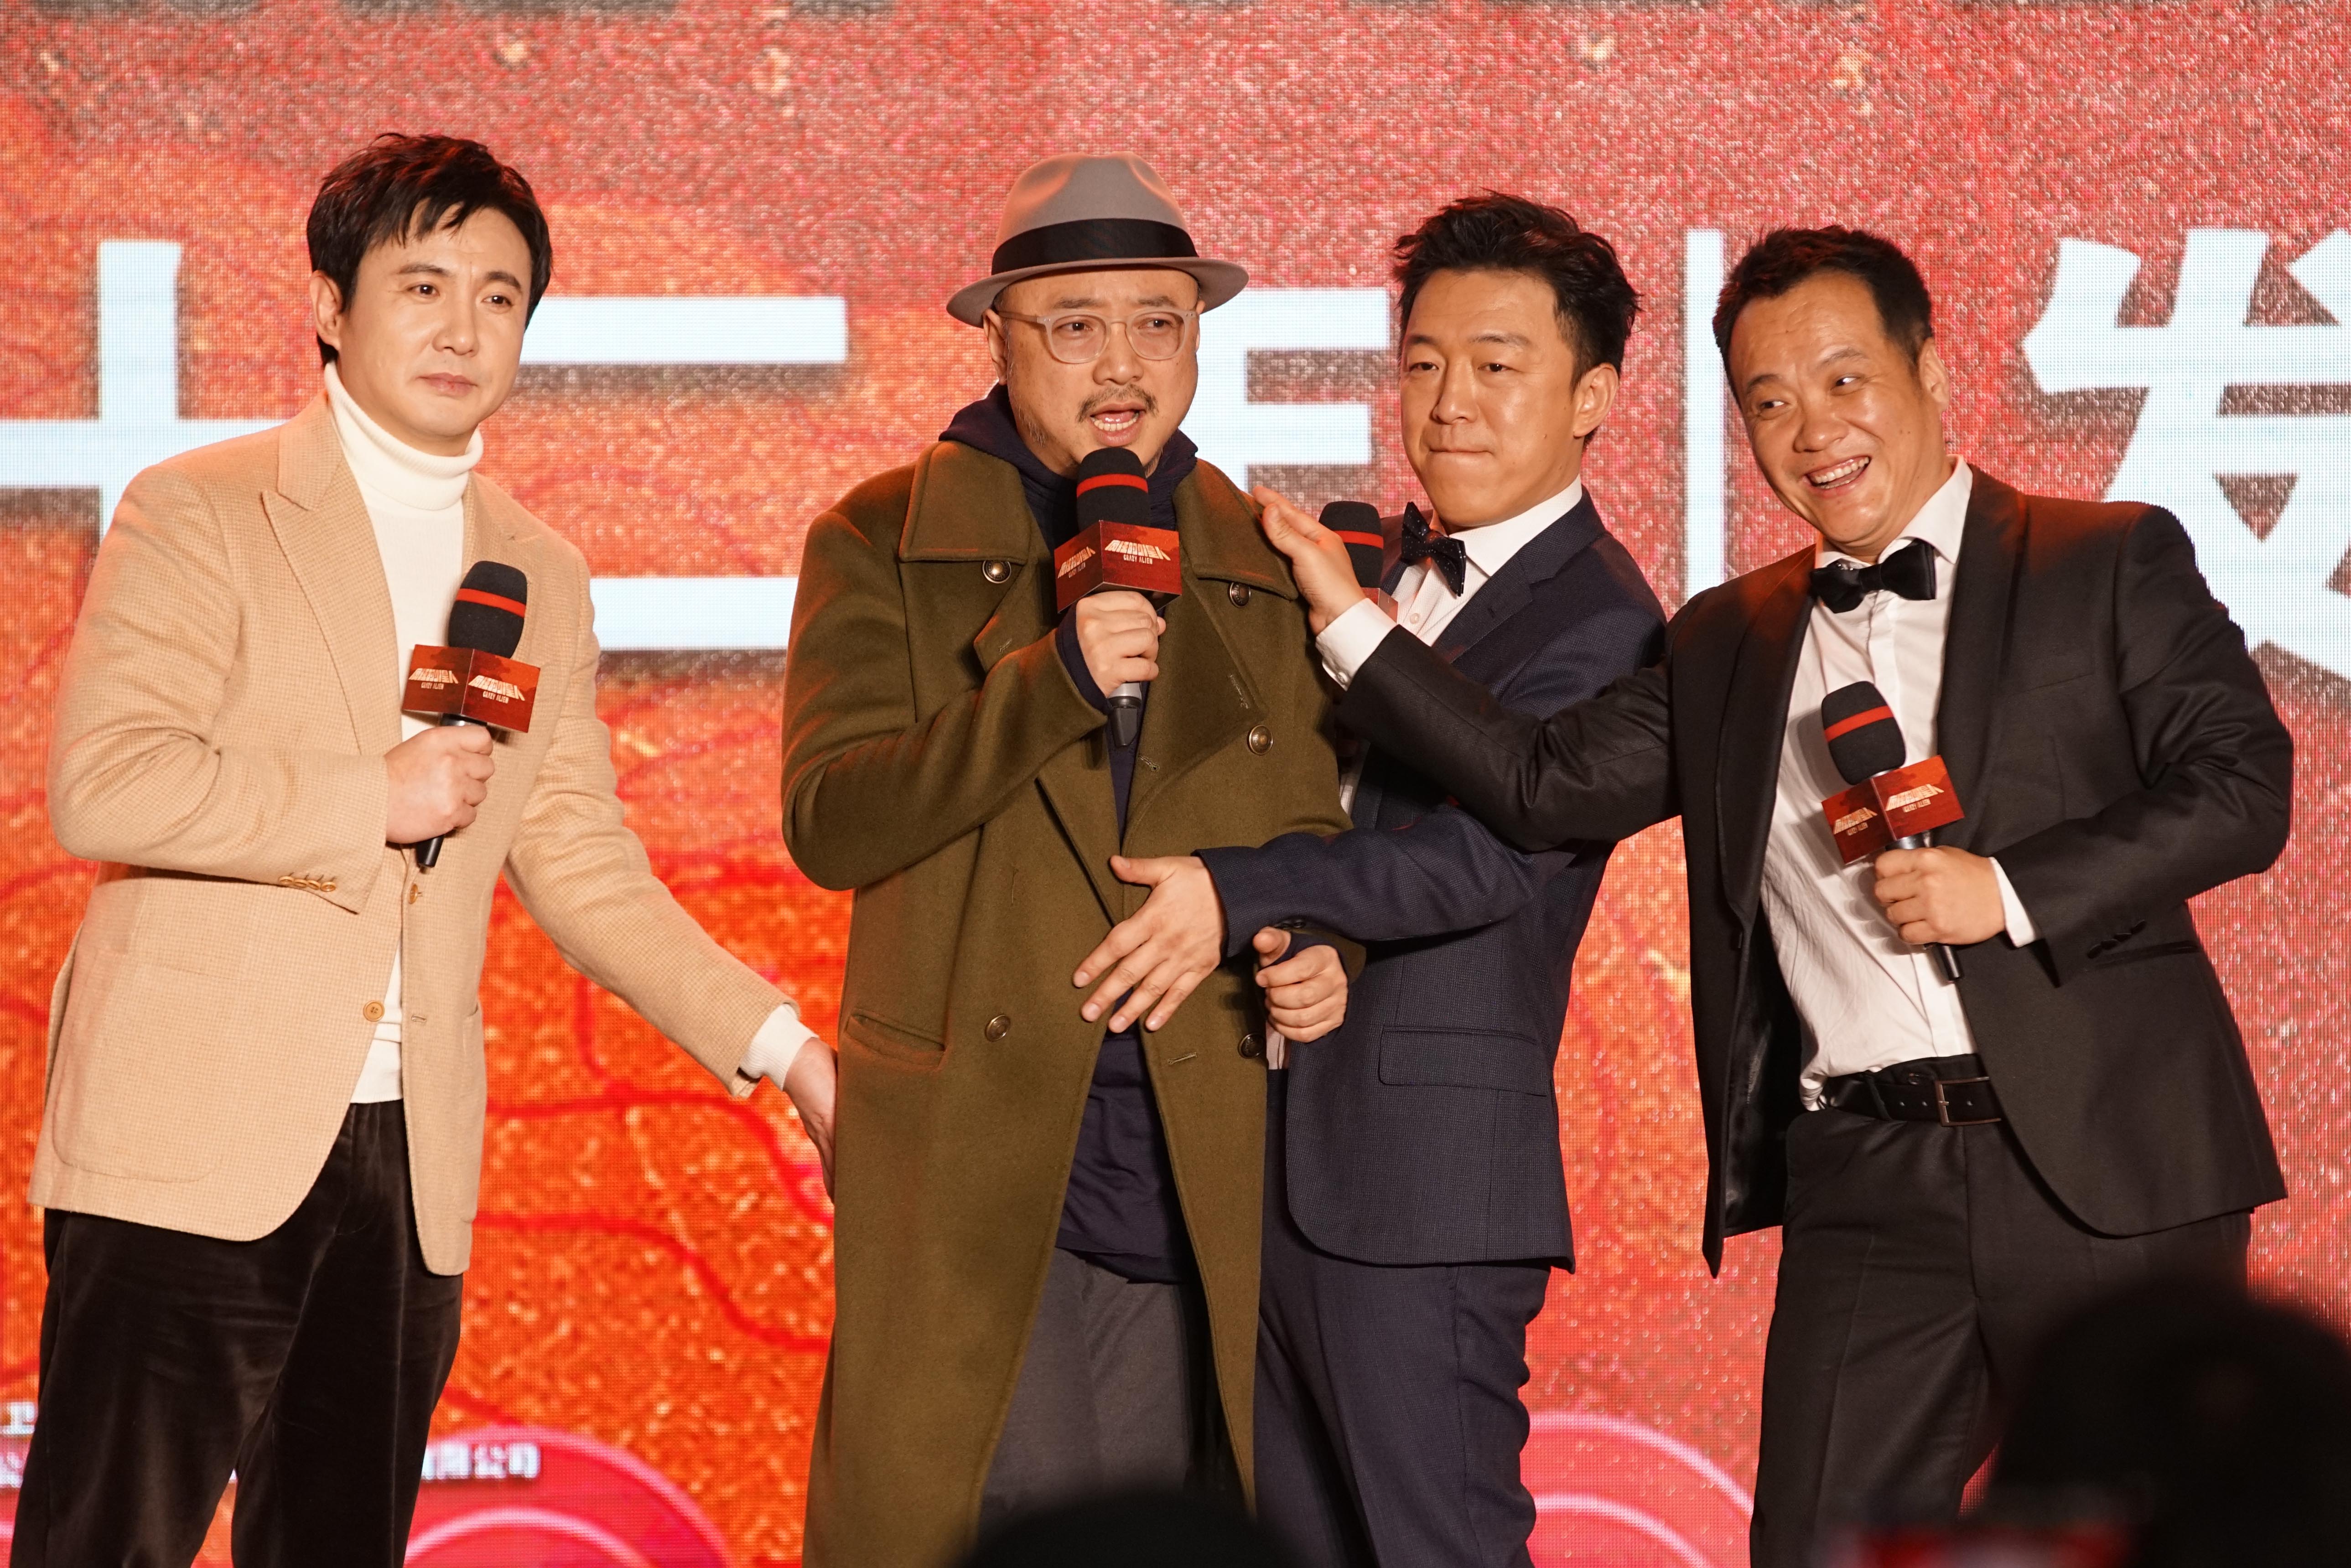 左起:演员沈腾,徐峥,黄渤,导演宁浩出席发布会聊合作经历